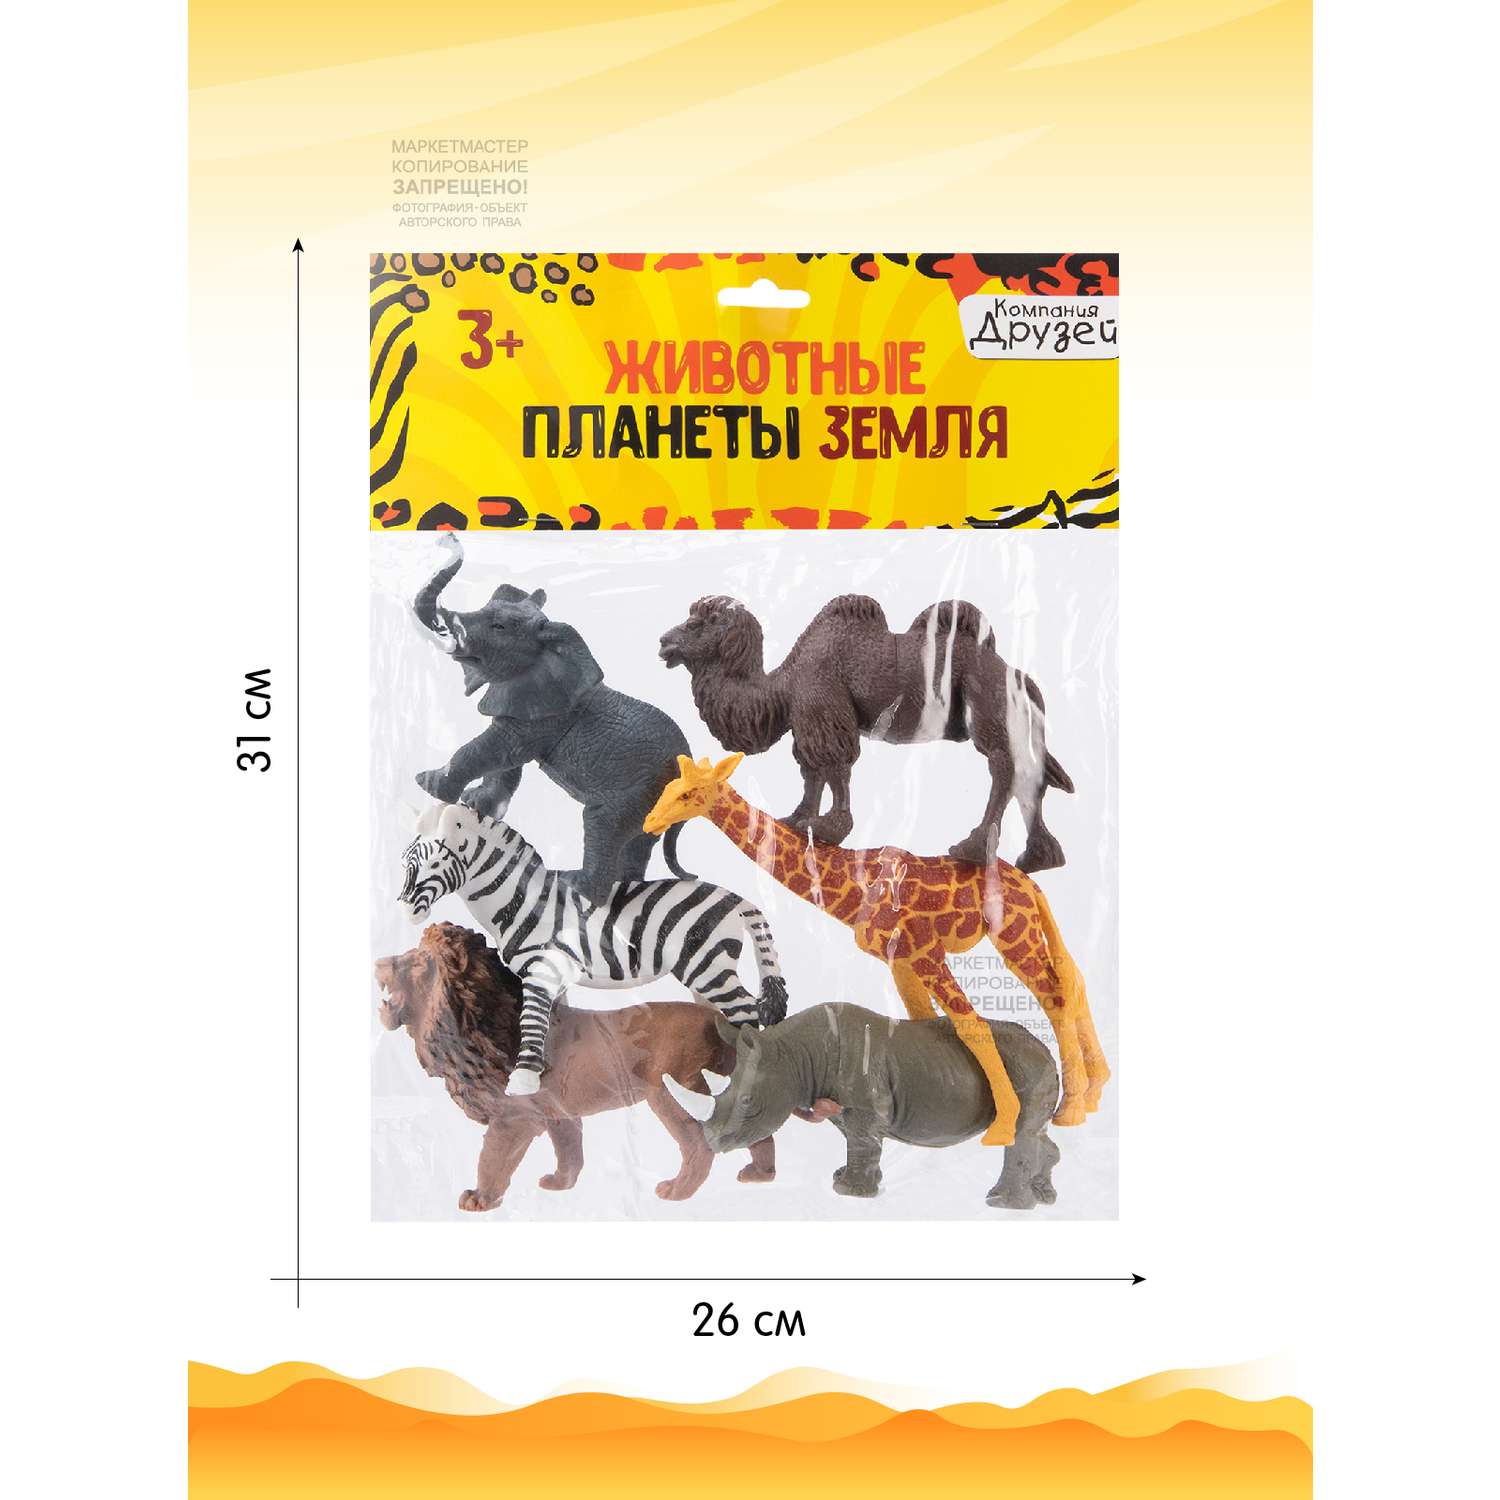 Игровой набор детский КОМПАНИЯ ДРУЗЕЙ Животные Африки фигурки 6 шт JB0207202 - фото 5